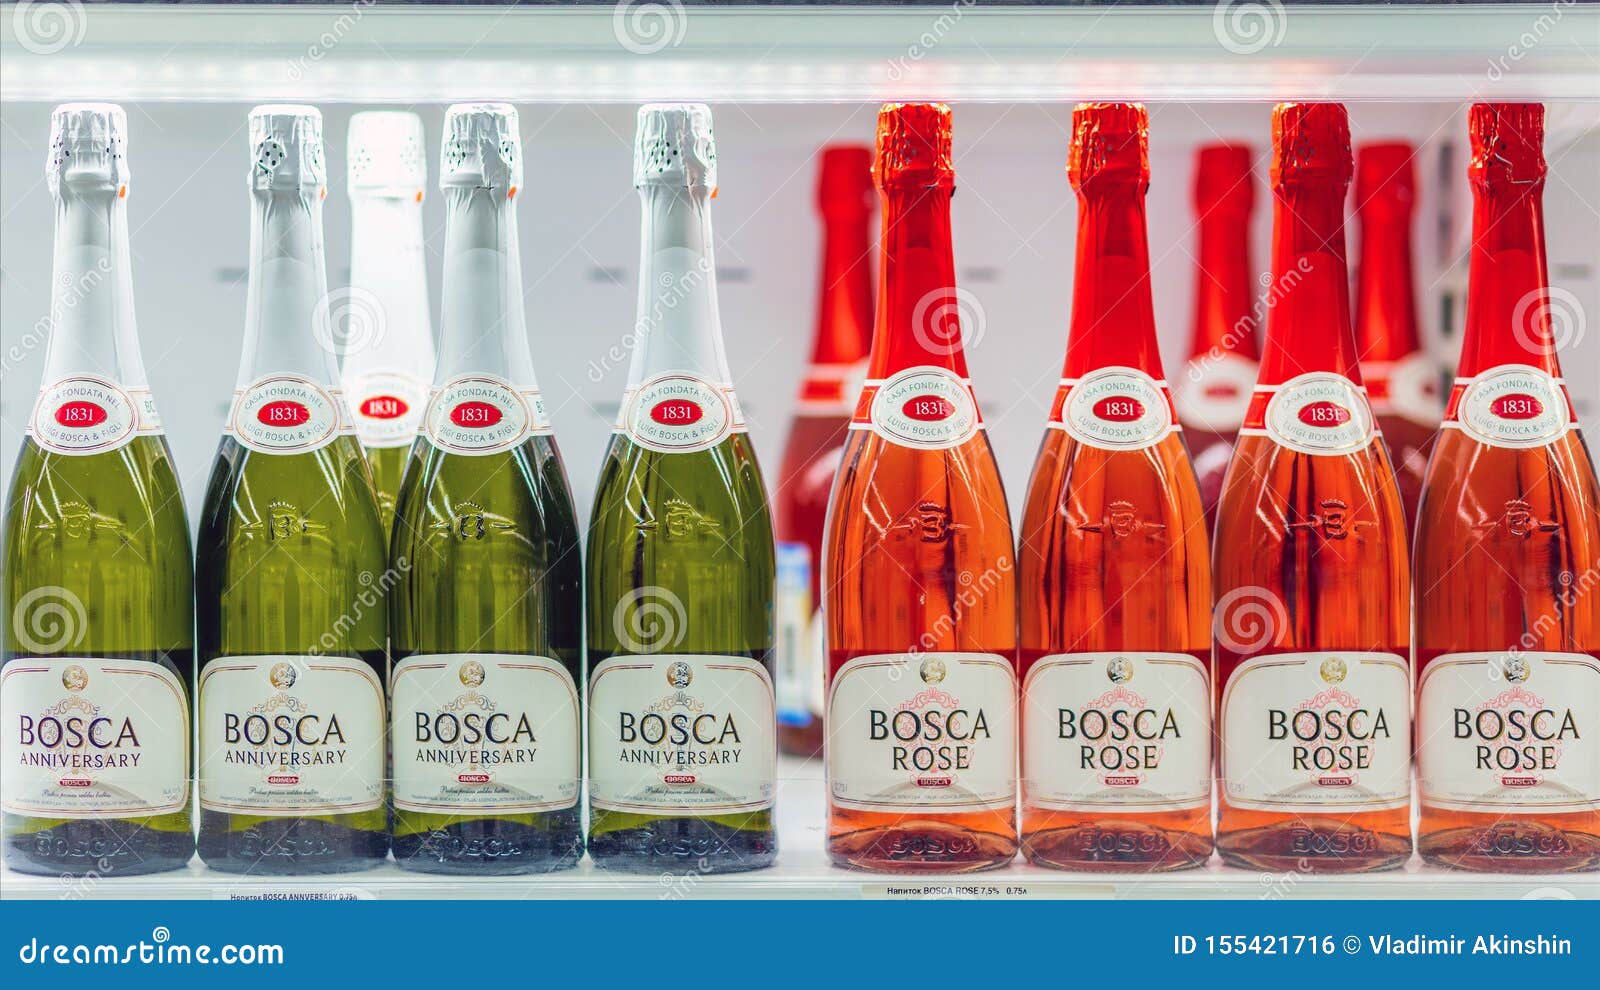 Красно белое боско цена. Bosca Rose. Шампанское Rose Bosco. Bosca шампанское розовое. Боска Розе Лимитед.